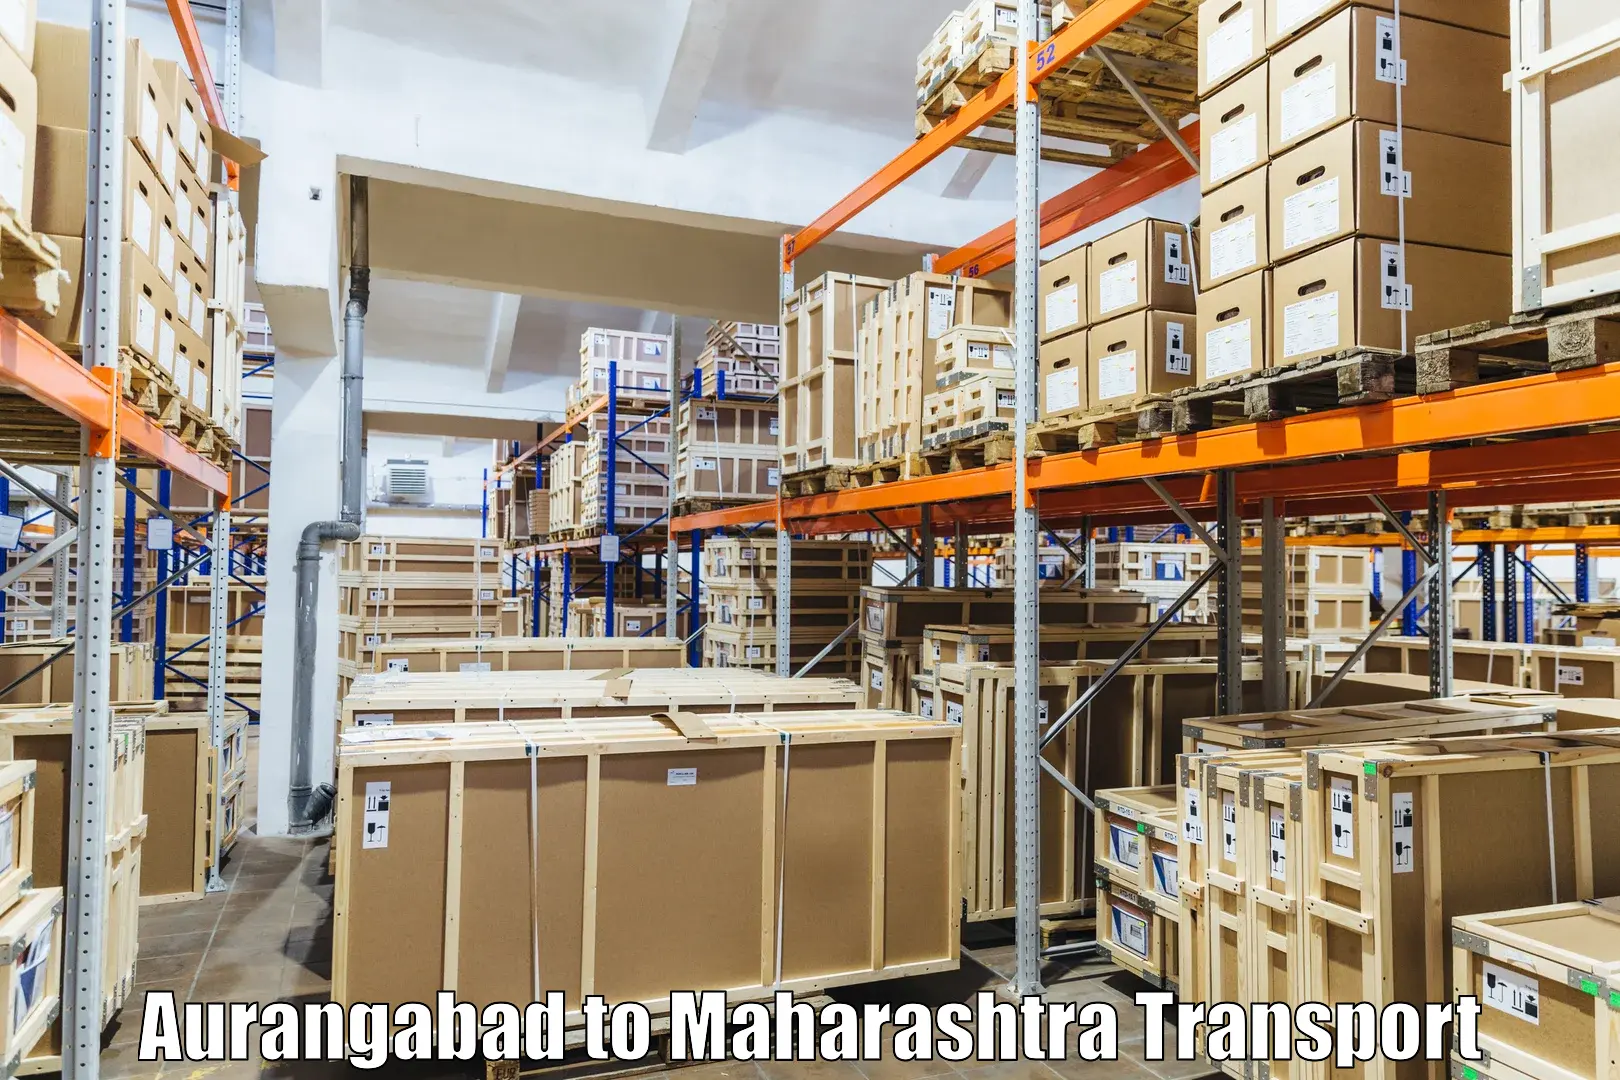 Land transport services in Aurangabad to Waranga Phata